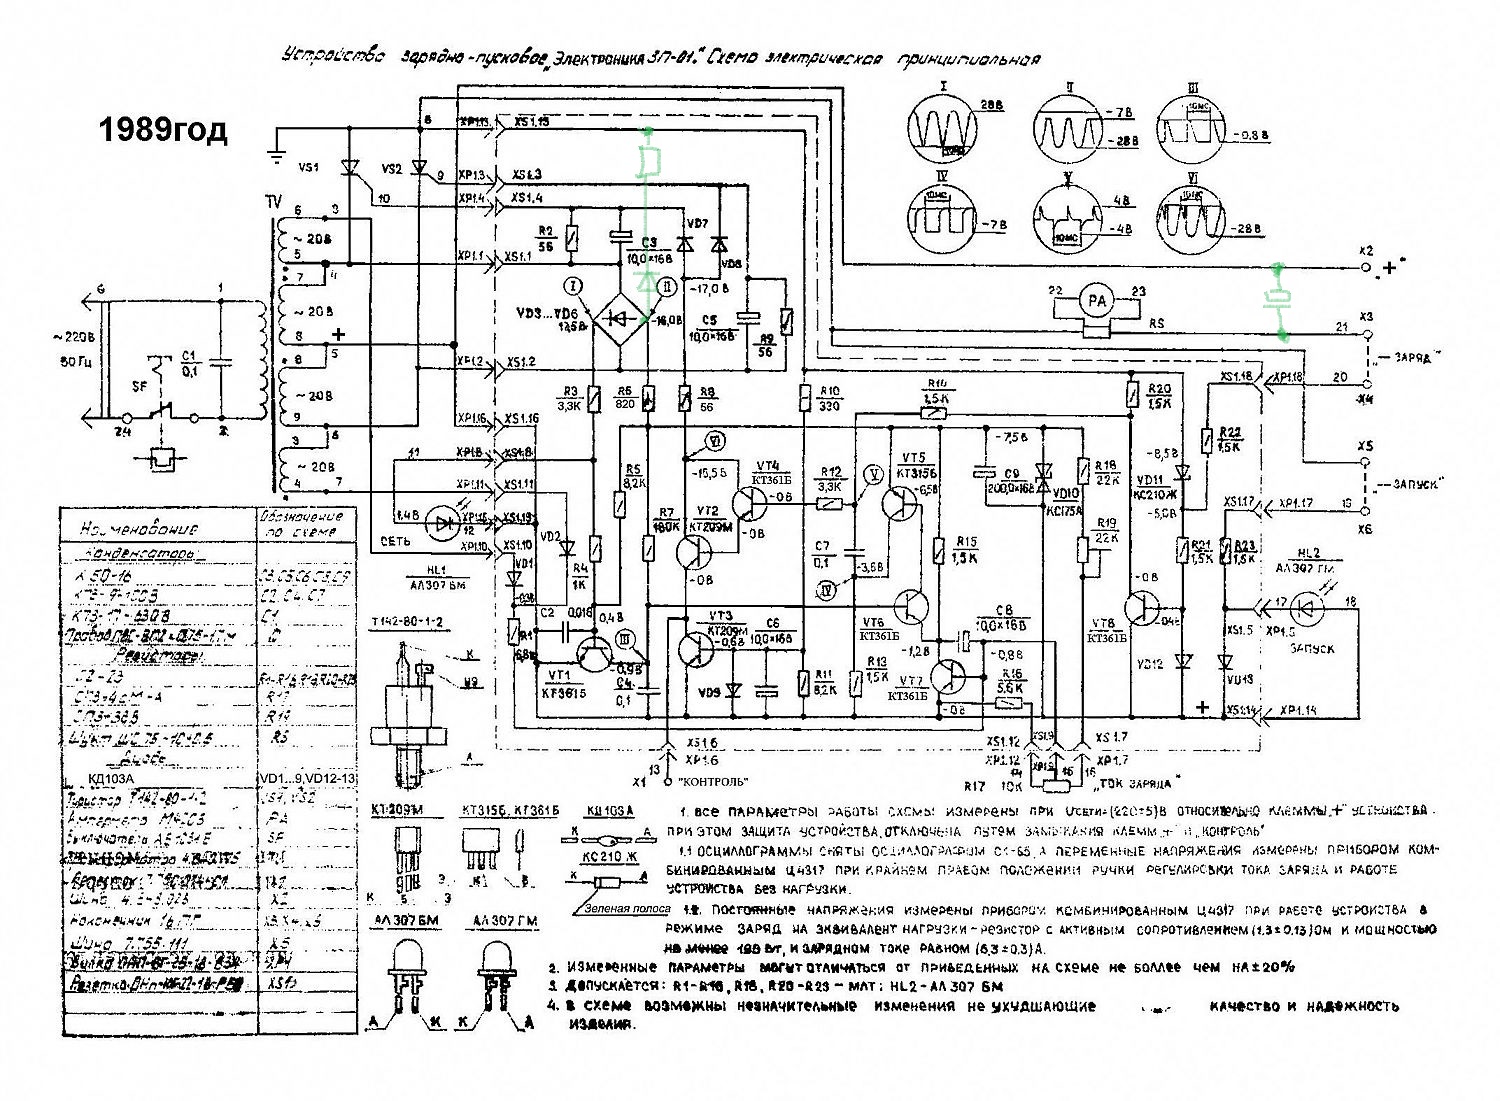 Электроника зп 1 схема